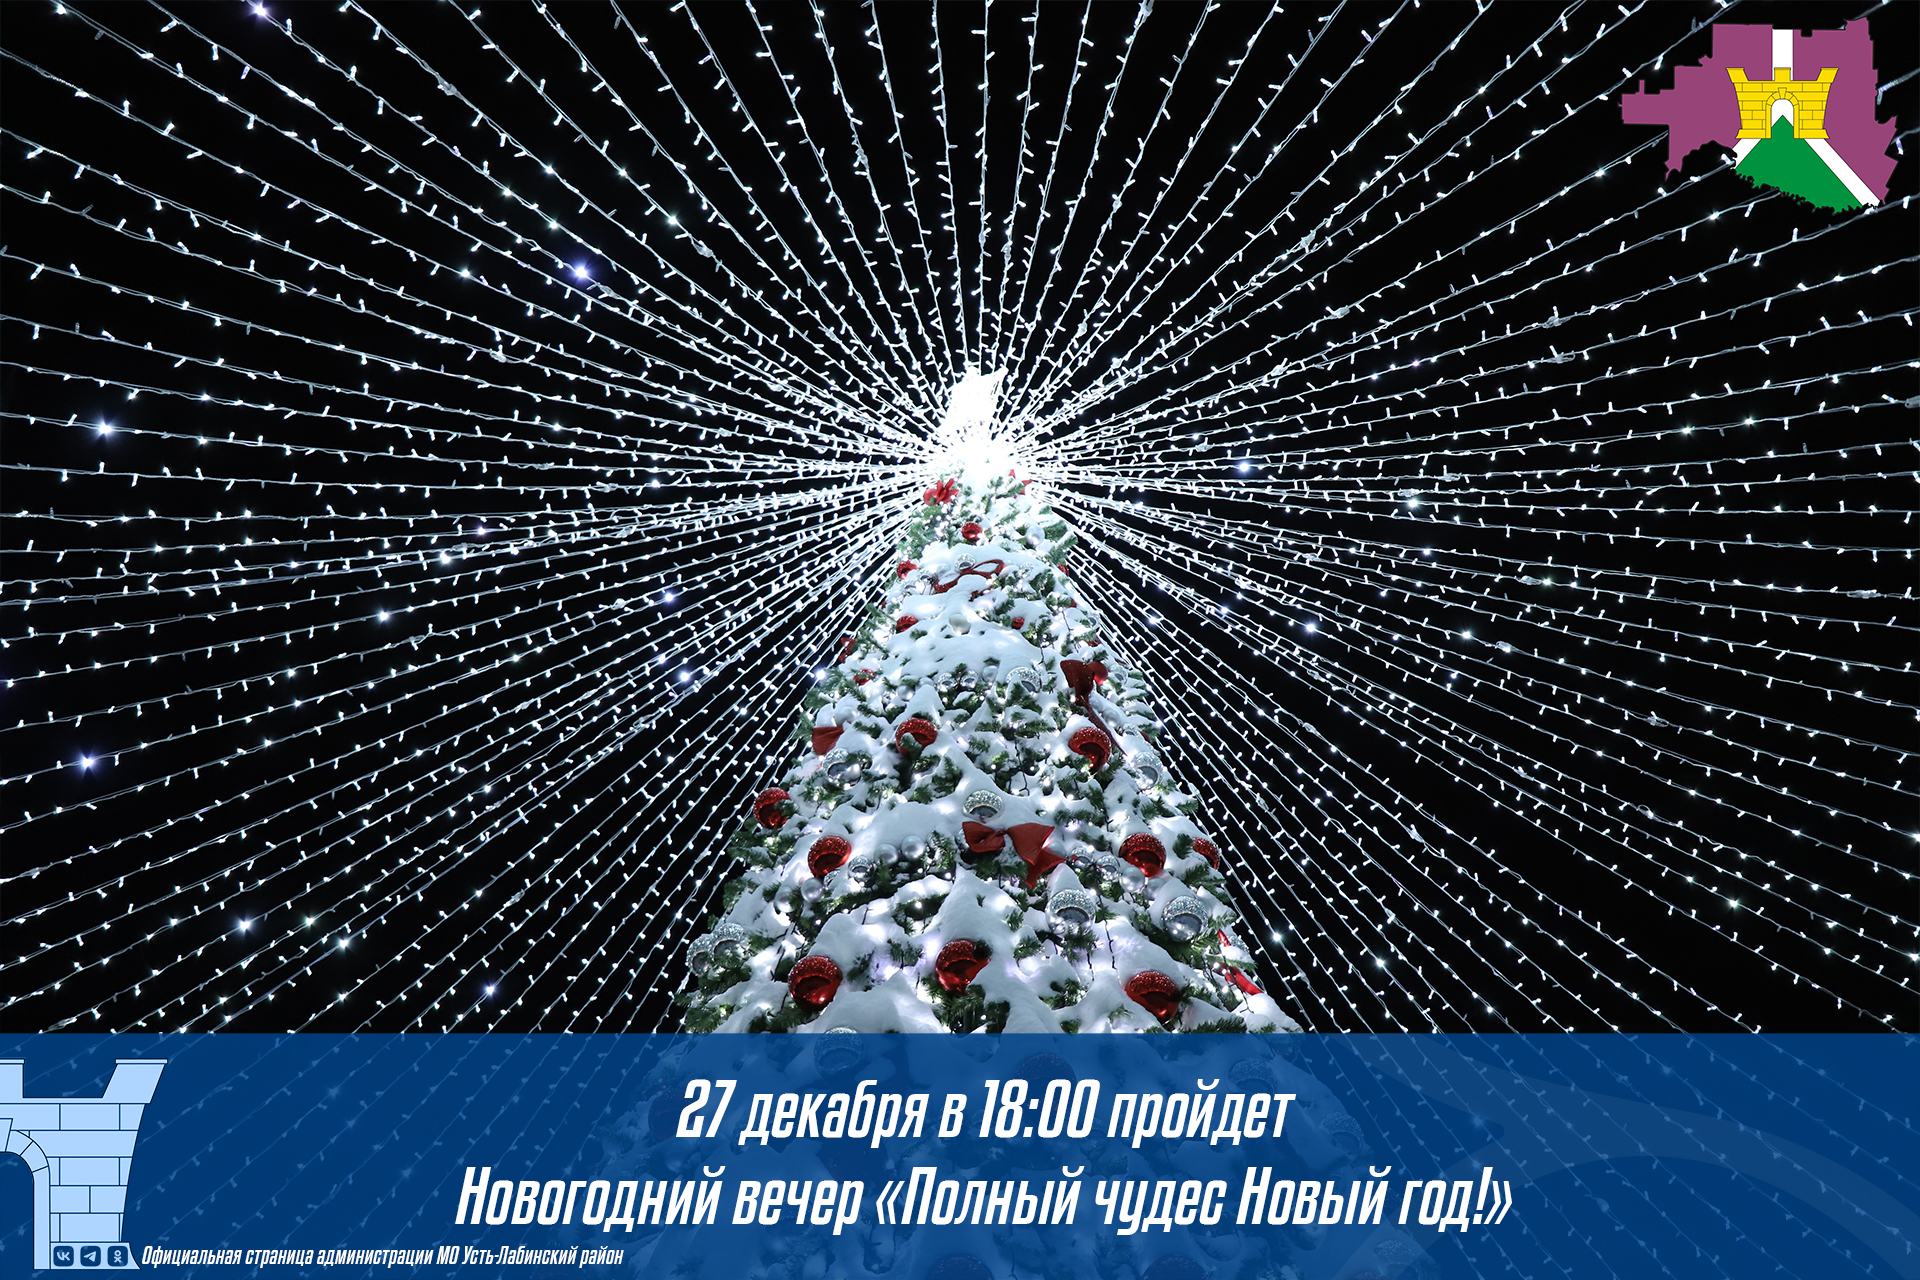 Новогодний вечер «Полный чудес Новый год» пройдет в Усть-Лабинске